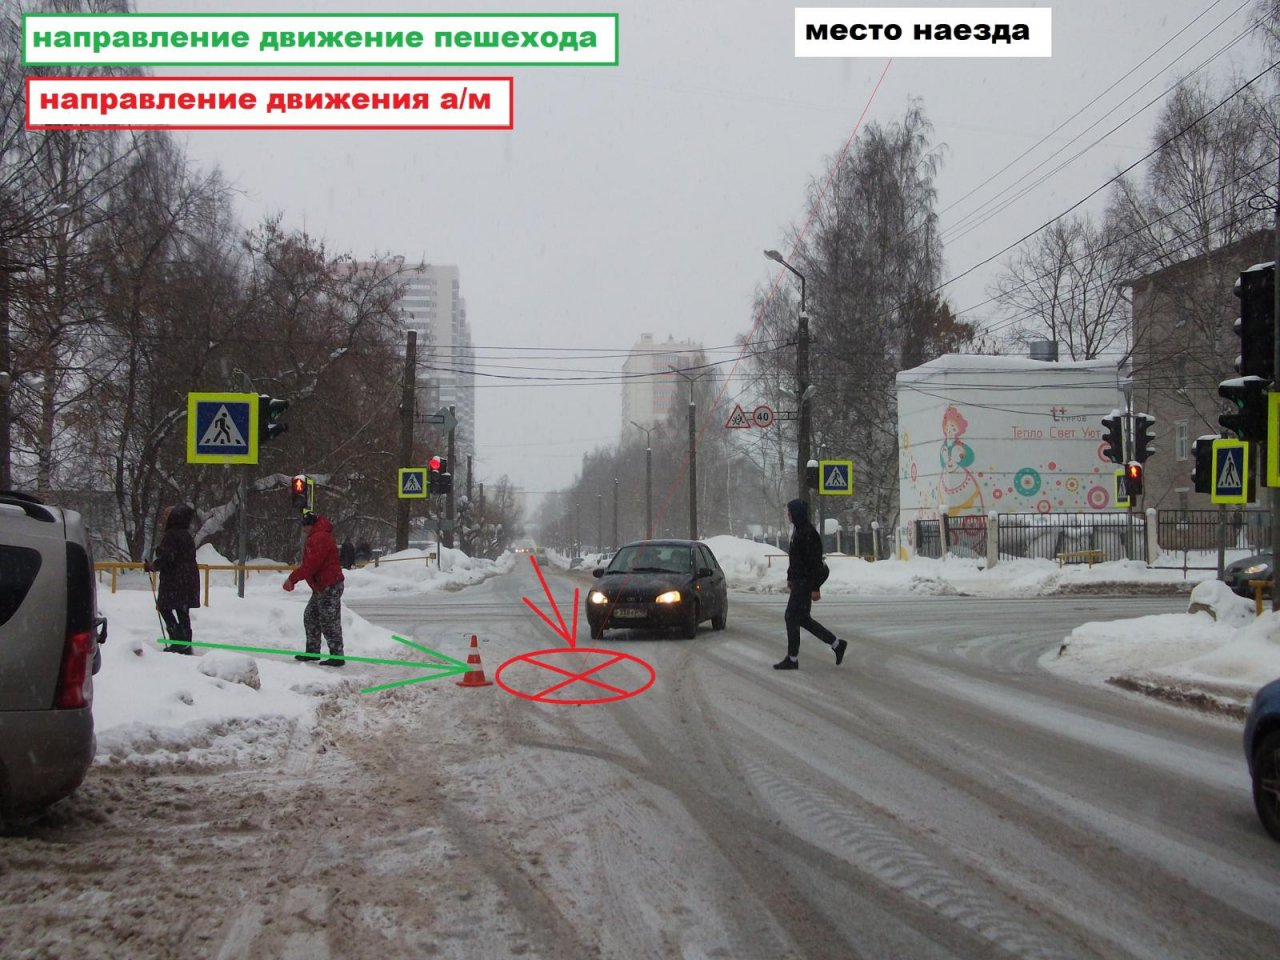 У школы в Кирове неизвестный водитель сбил ребенка и скрылся